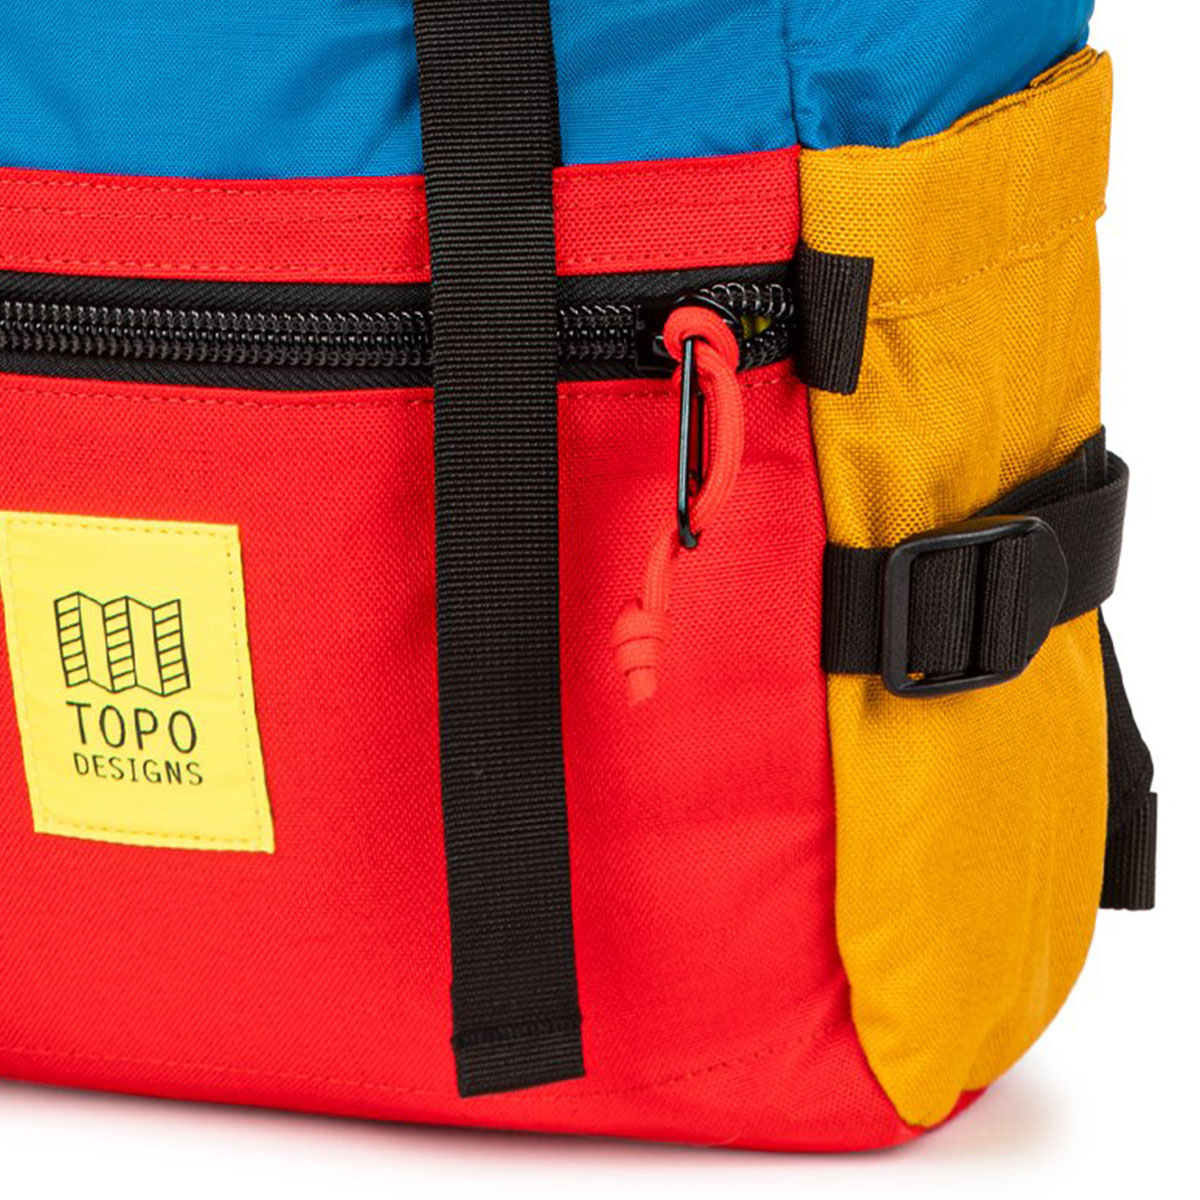 Topo Designs Rover Pack Classic Blue/Red/Forest, der ideale Rucksack für den täglichen Gebrauch